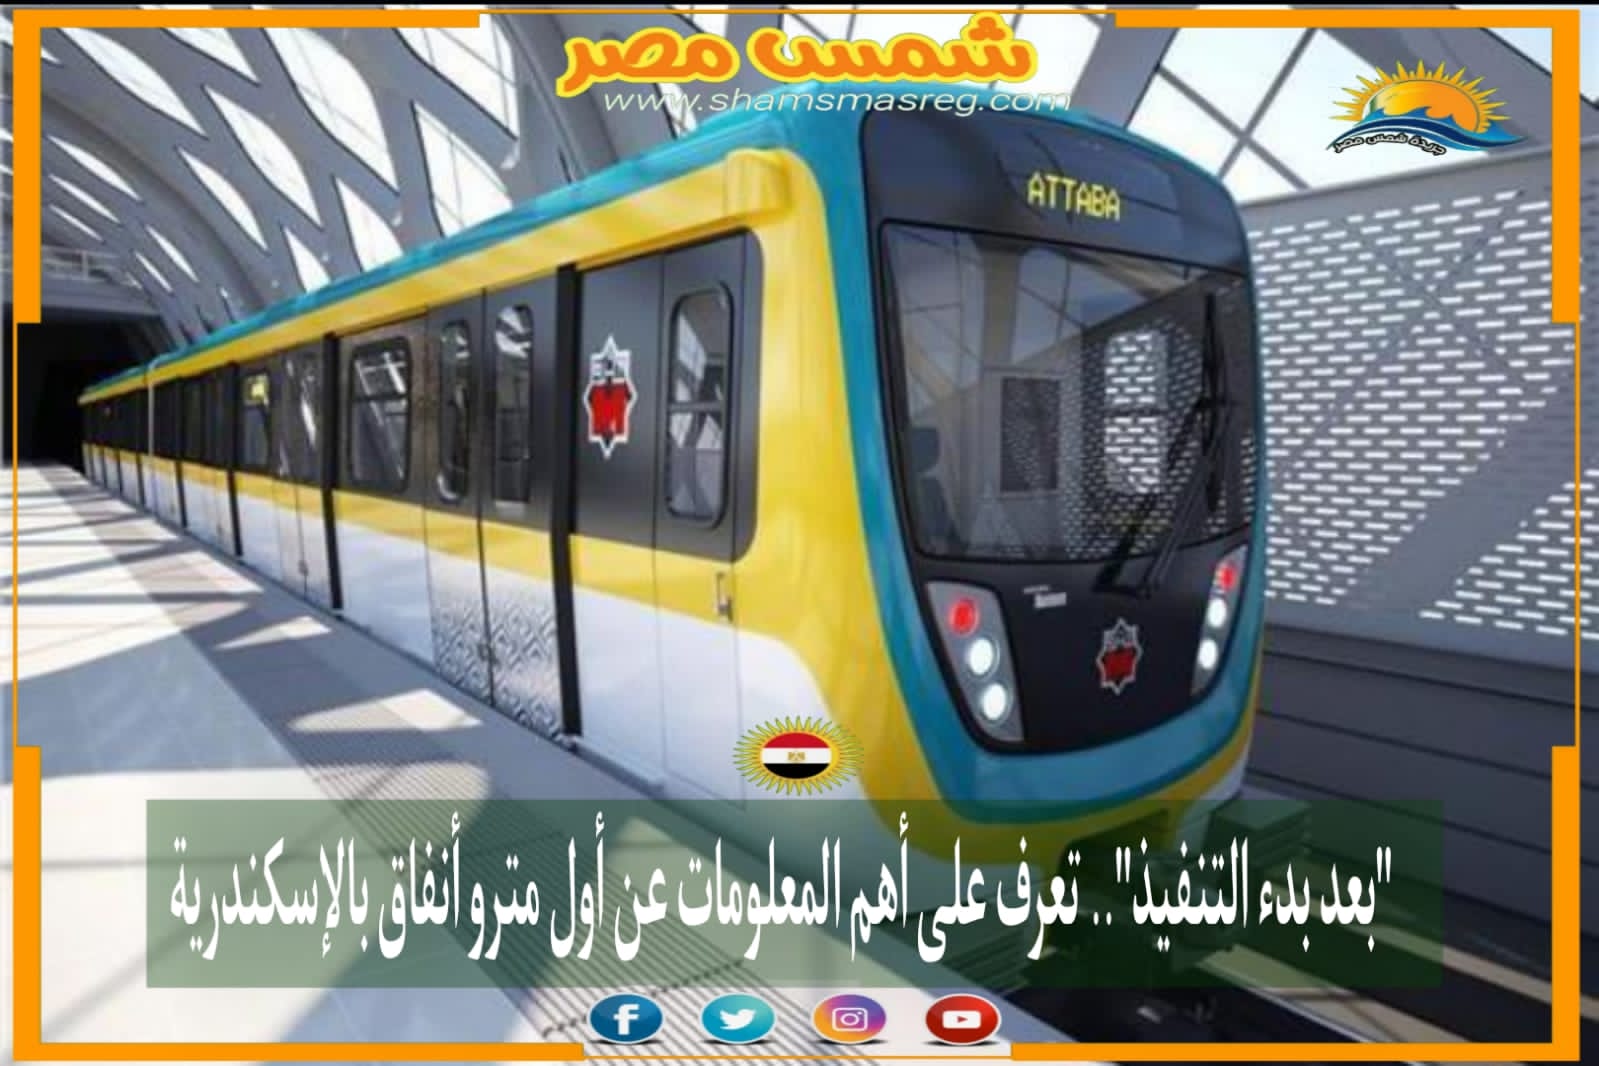 |شمس مصر|... "بعد بدء التنفيذ".. تعرف على أهم المعلومات عن أول مترو أنفاق بالإسكندرية.